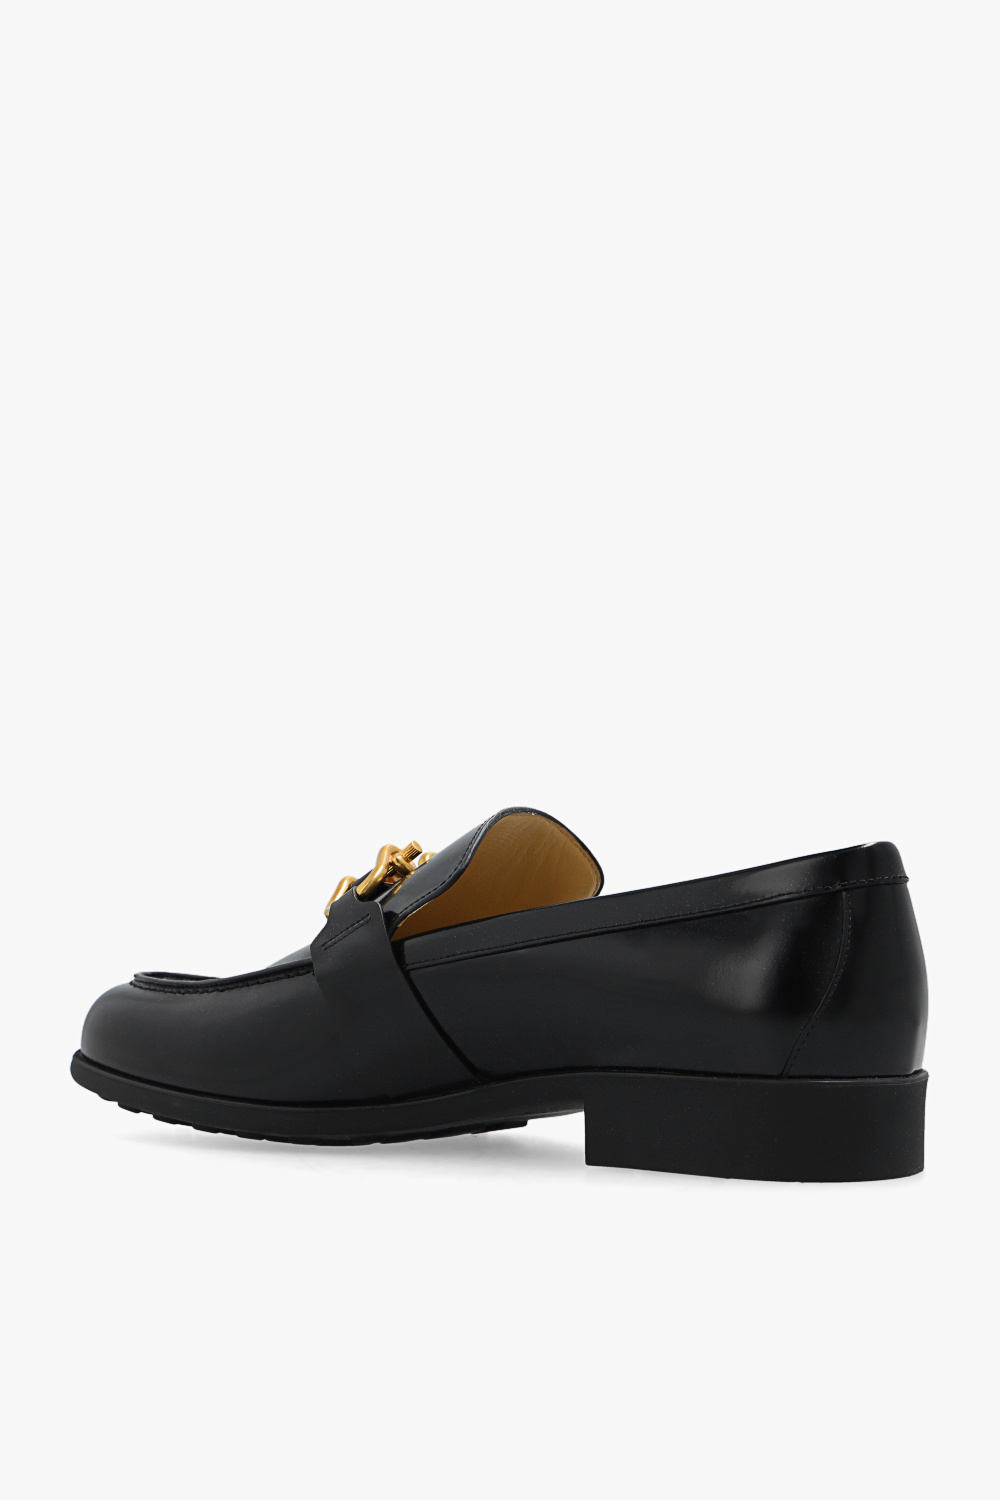 bottega rectangular Veneta ‘Monsieur’ leather loafers